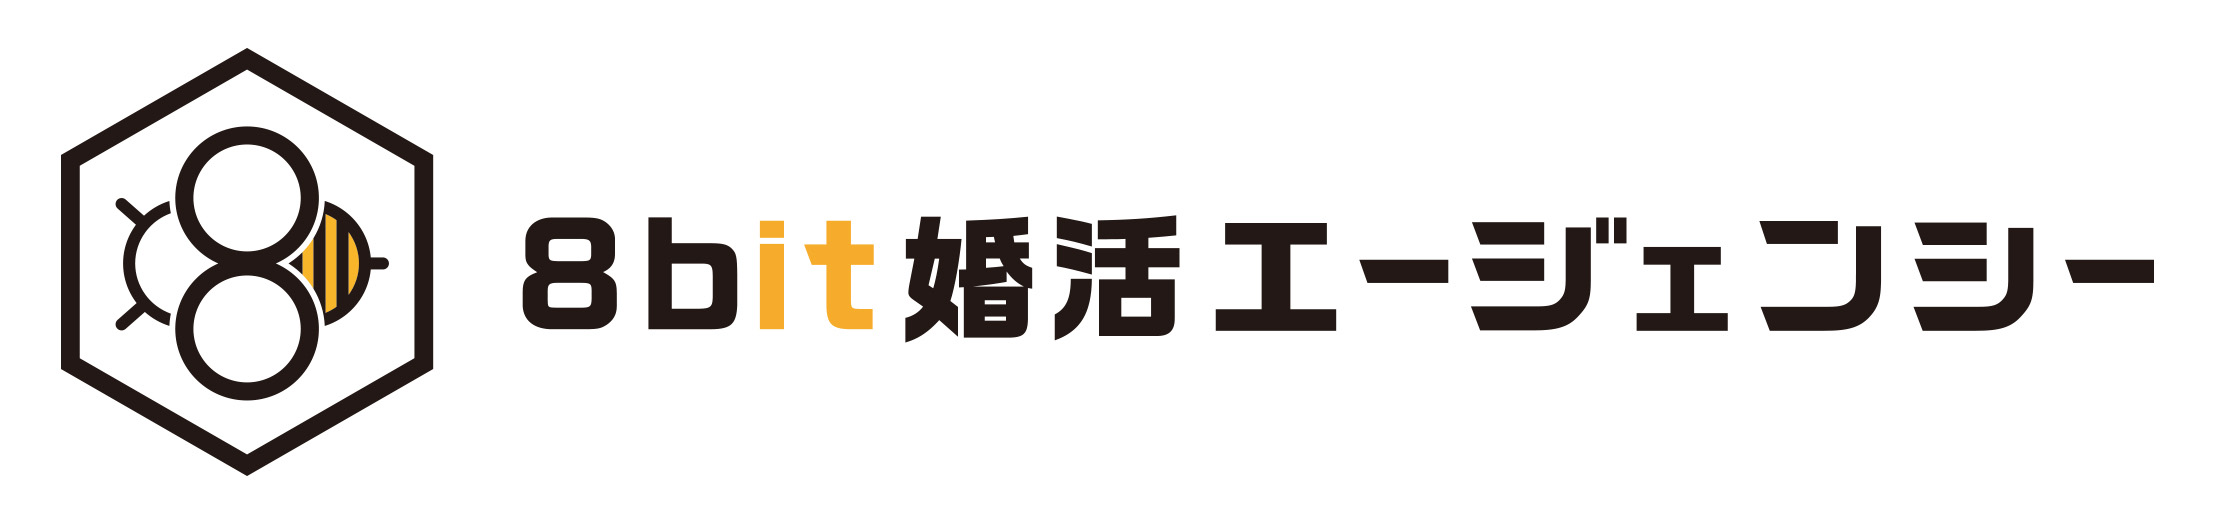 8bit_logo_横組